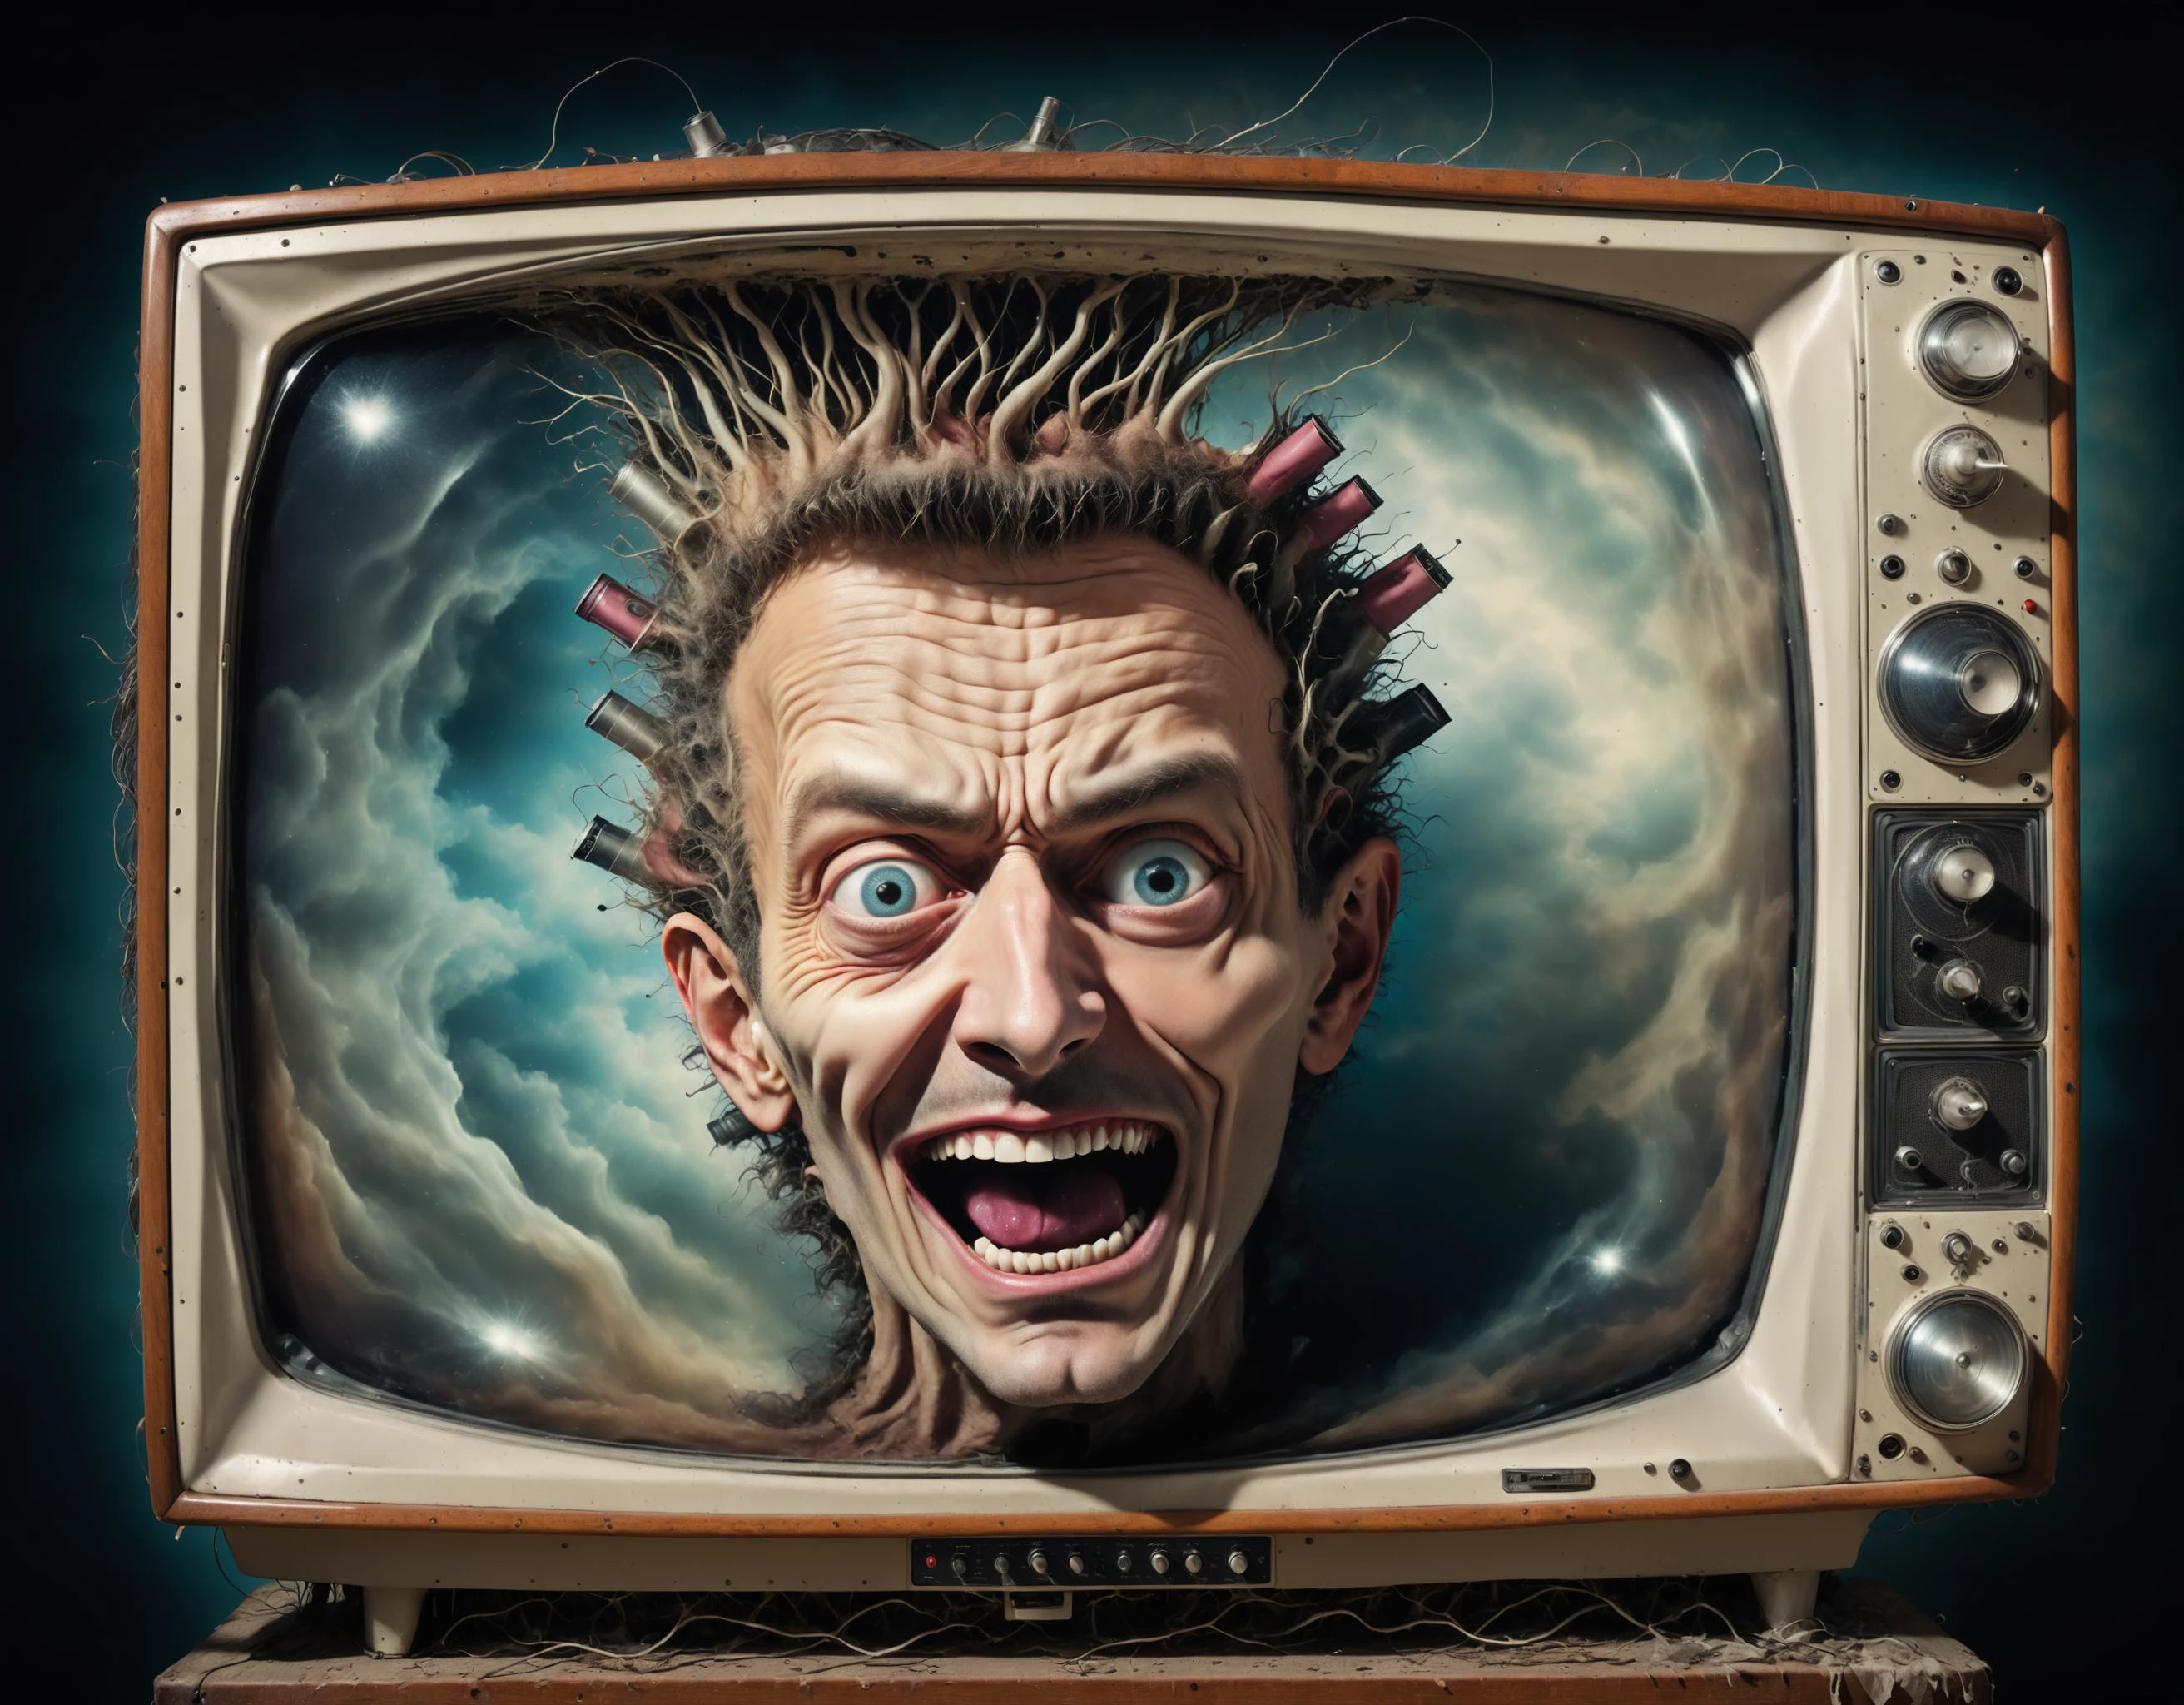 رأس رجل مجنون يخرج من جهاز تلفزيون قديم, دراماتيكي, الوئام السريالي, ضحك مهووس